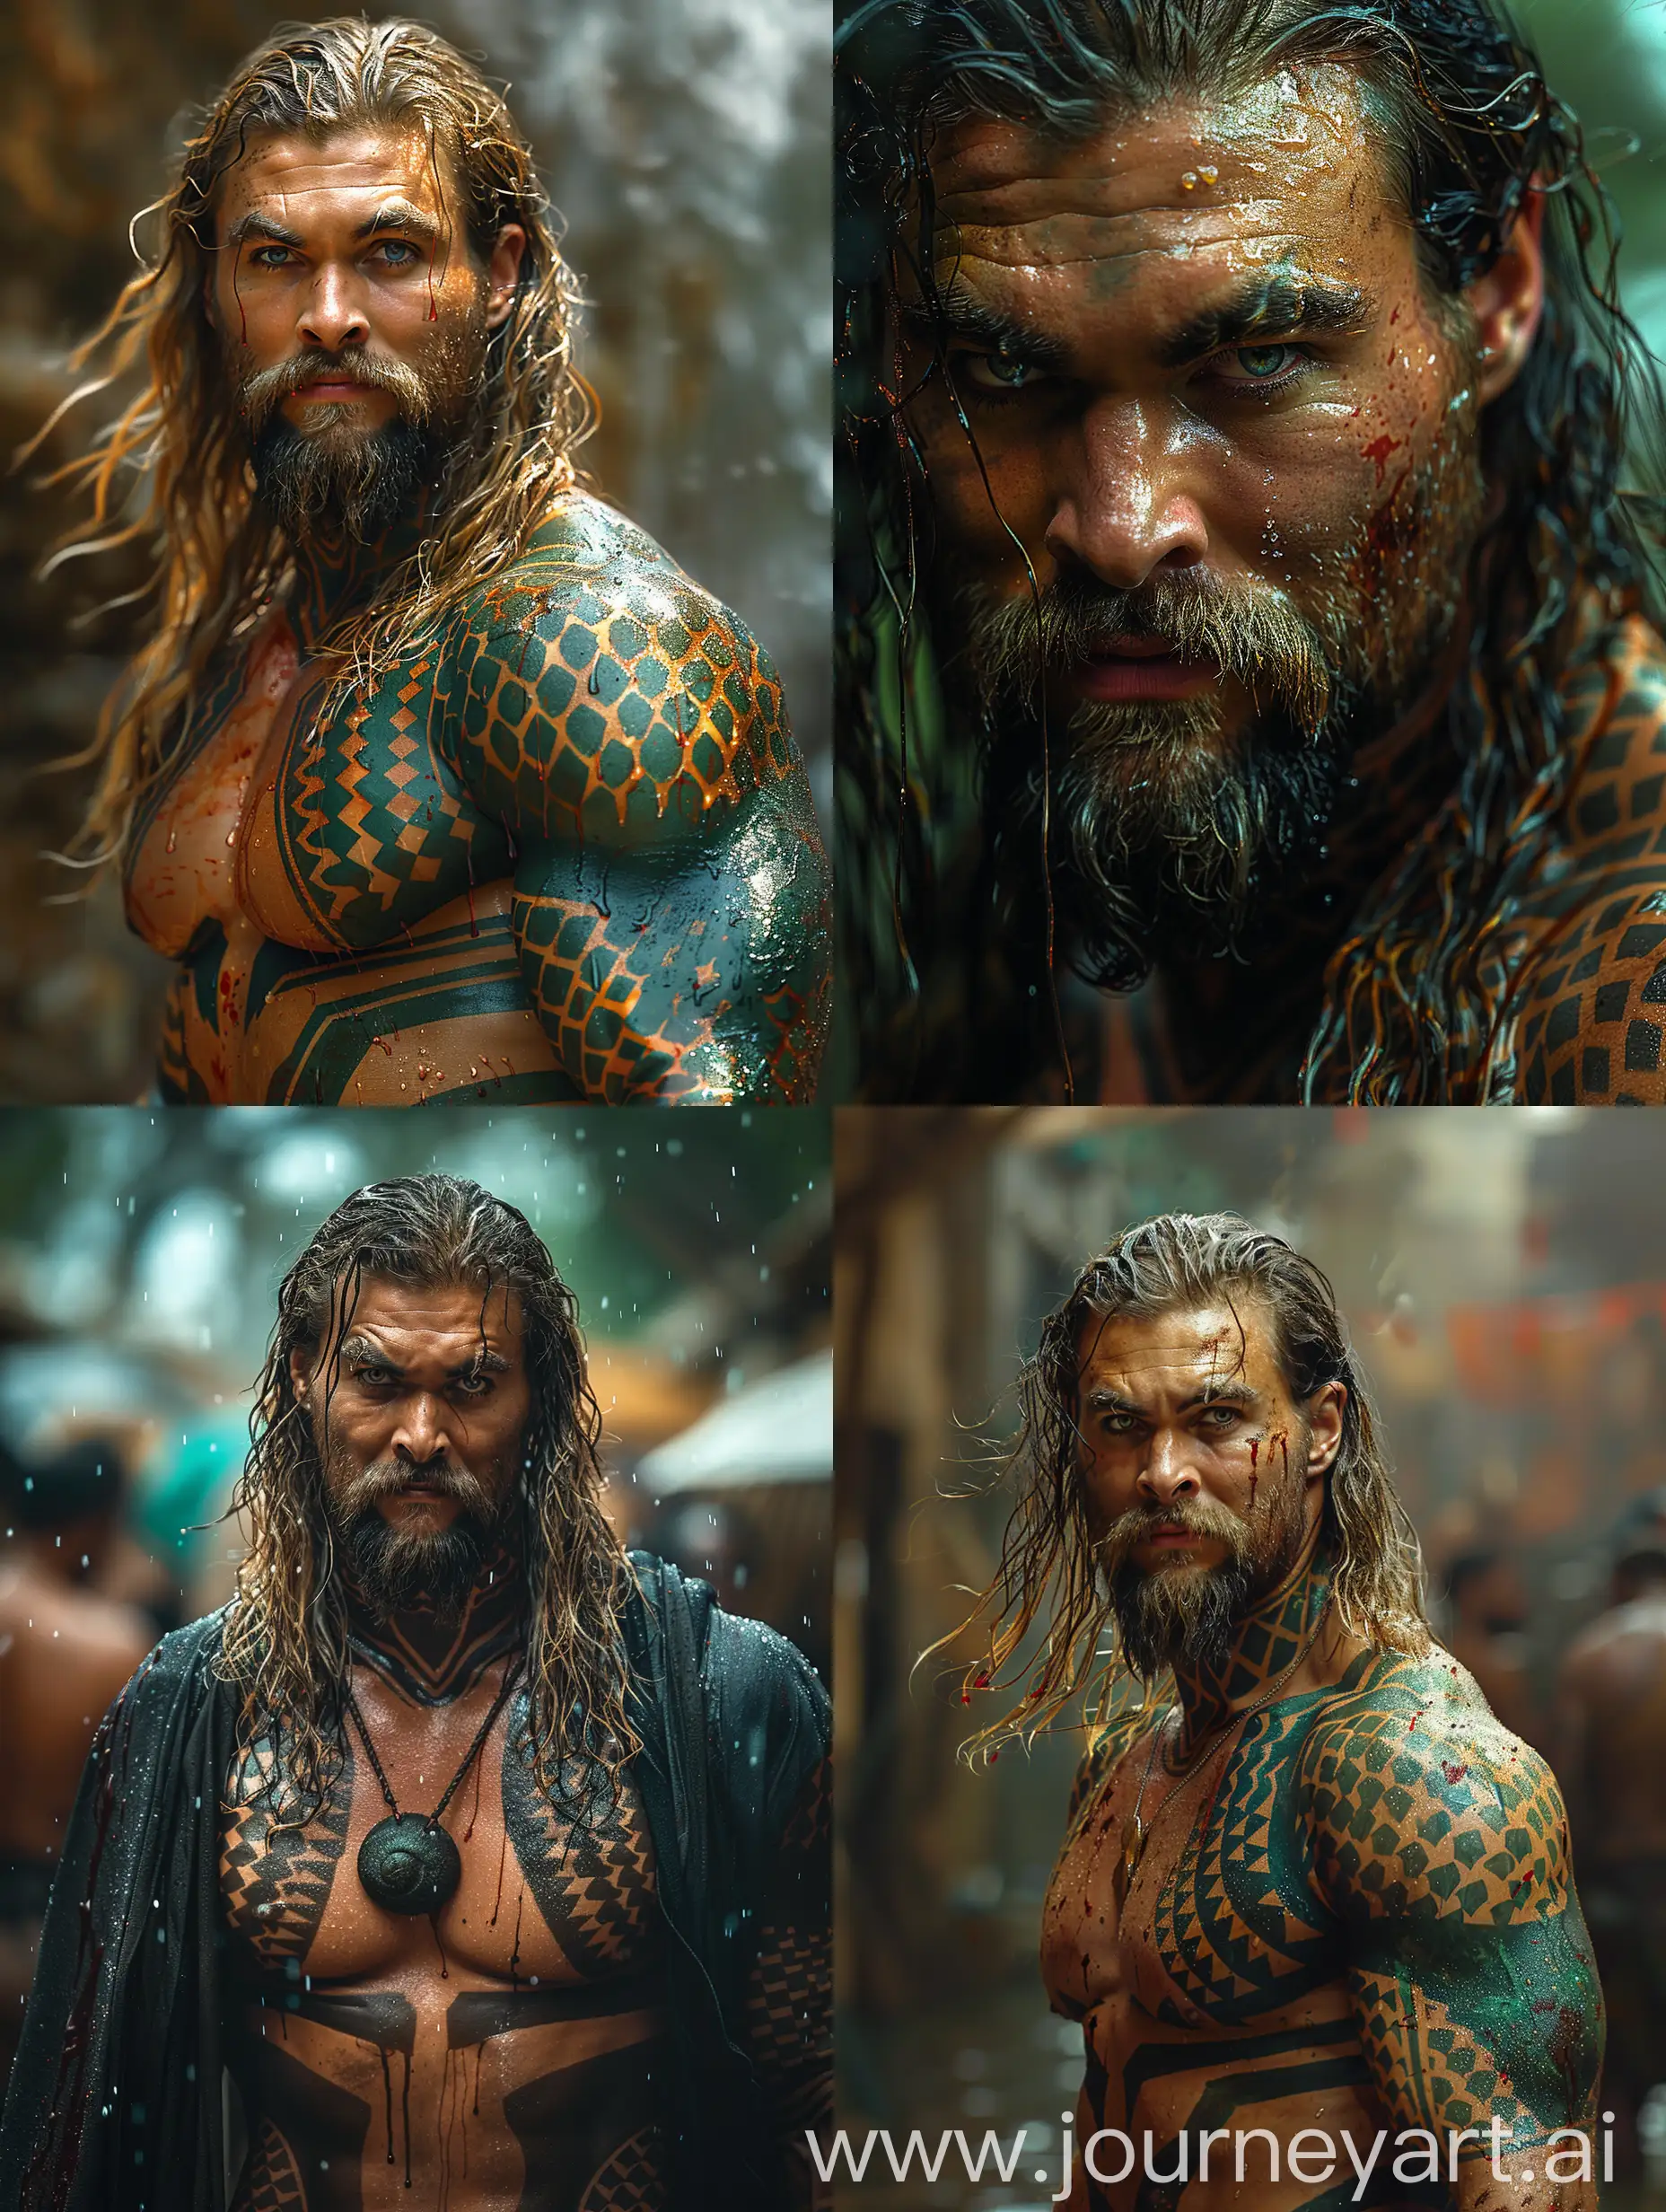 Surrealistic-Realism-Chris-Hemsworth-as-Aquaman-in-Full-Combat-Mode